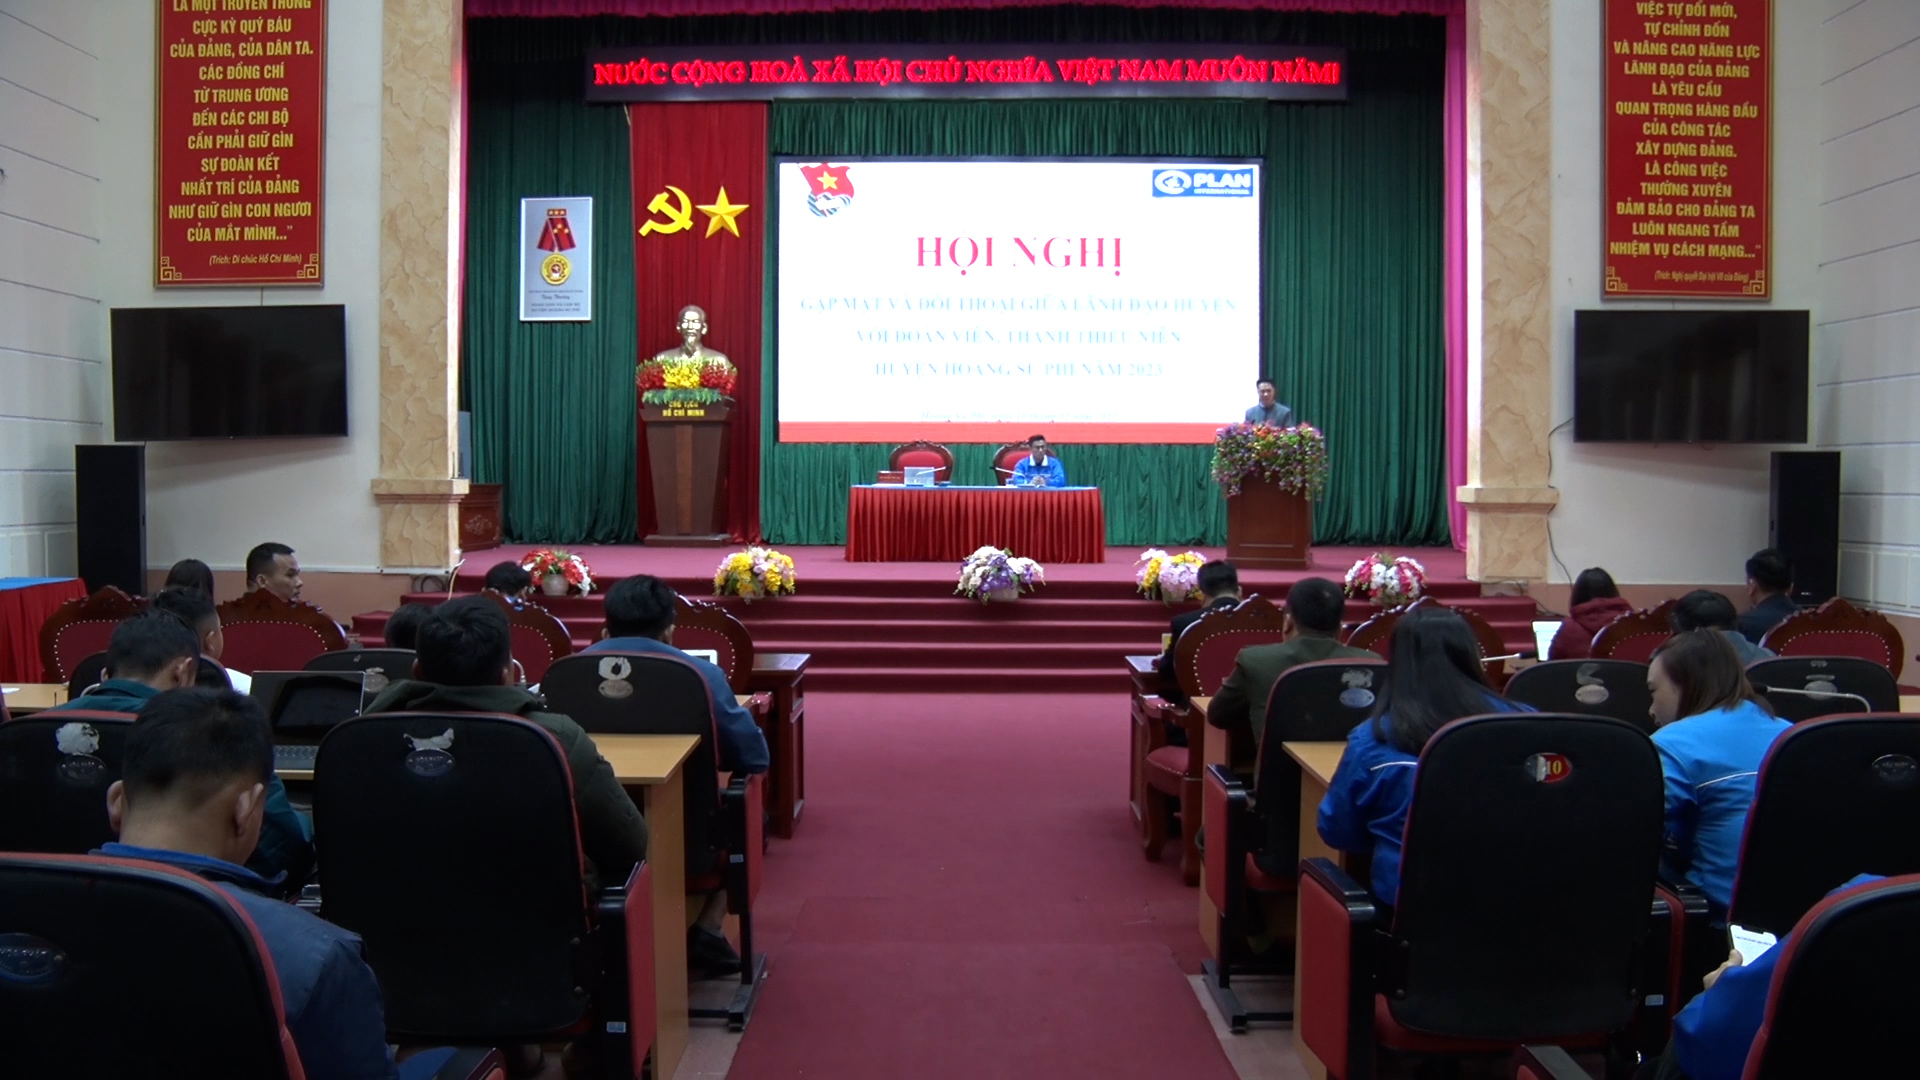 Hoàng Su phì gặp mặt và đối thoại giữa lãnh đạo huyện với đoàn viên, thanh thiếu niên